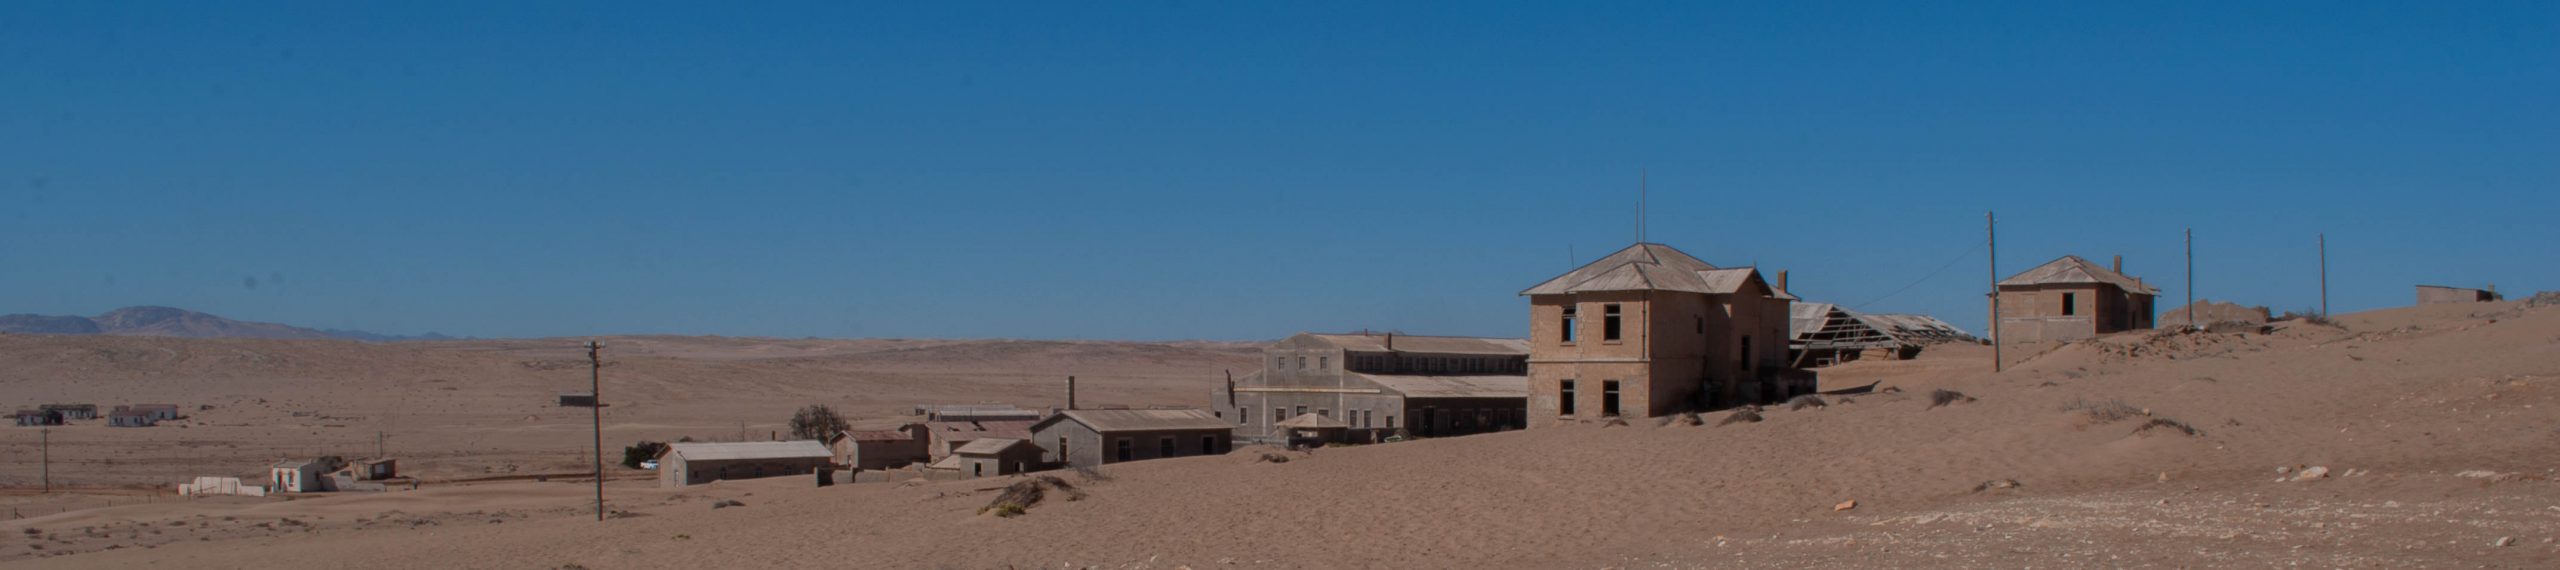 Verlaten stadje Kolmanskop Namibië